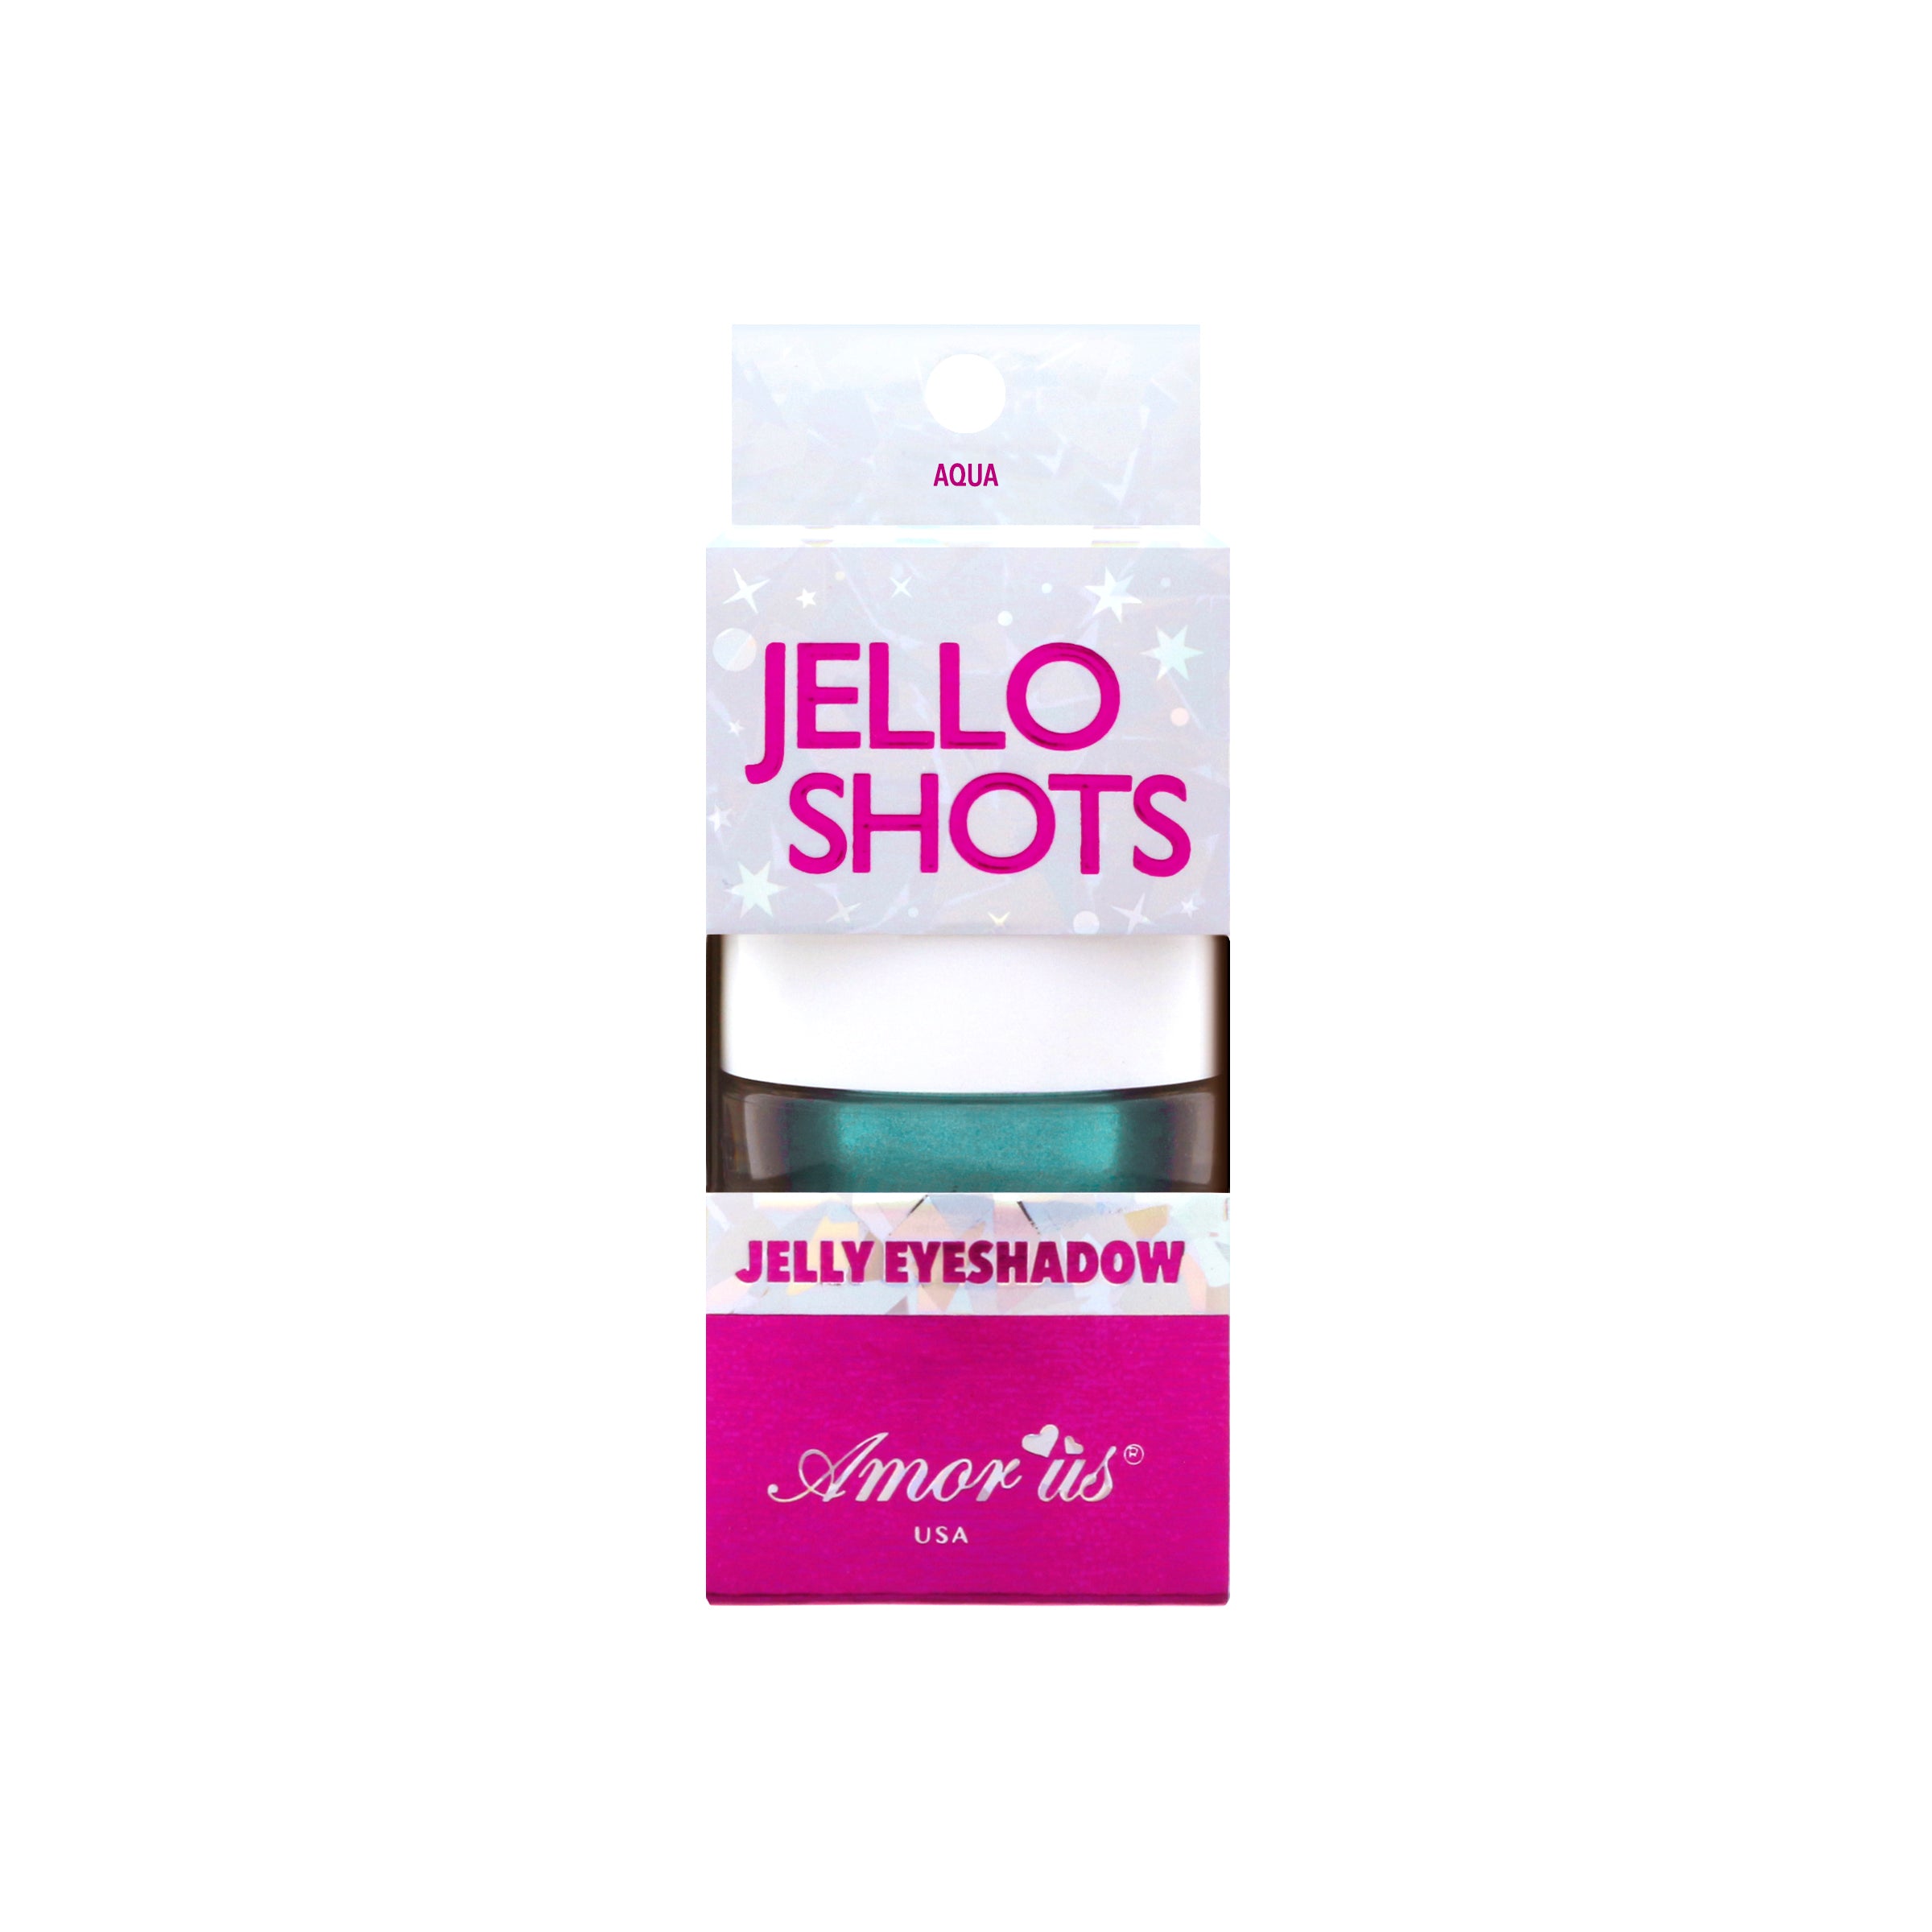 Aqua - Jello Shots Jelly Eyeshadow